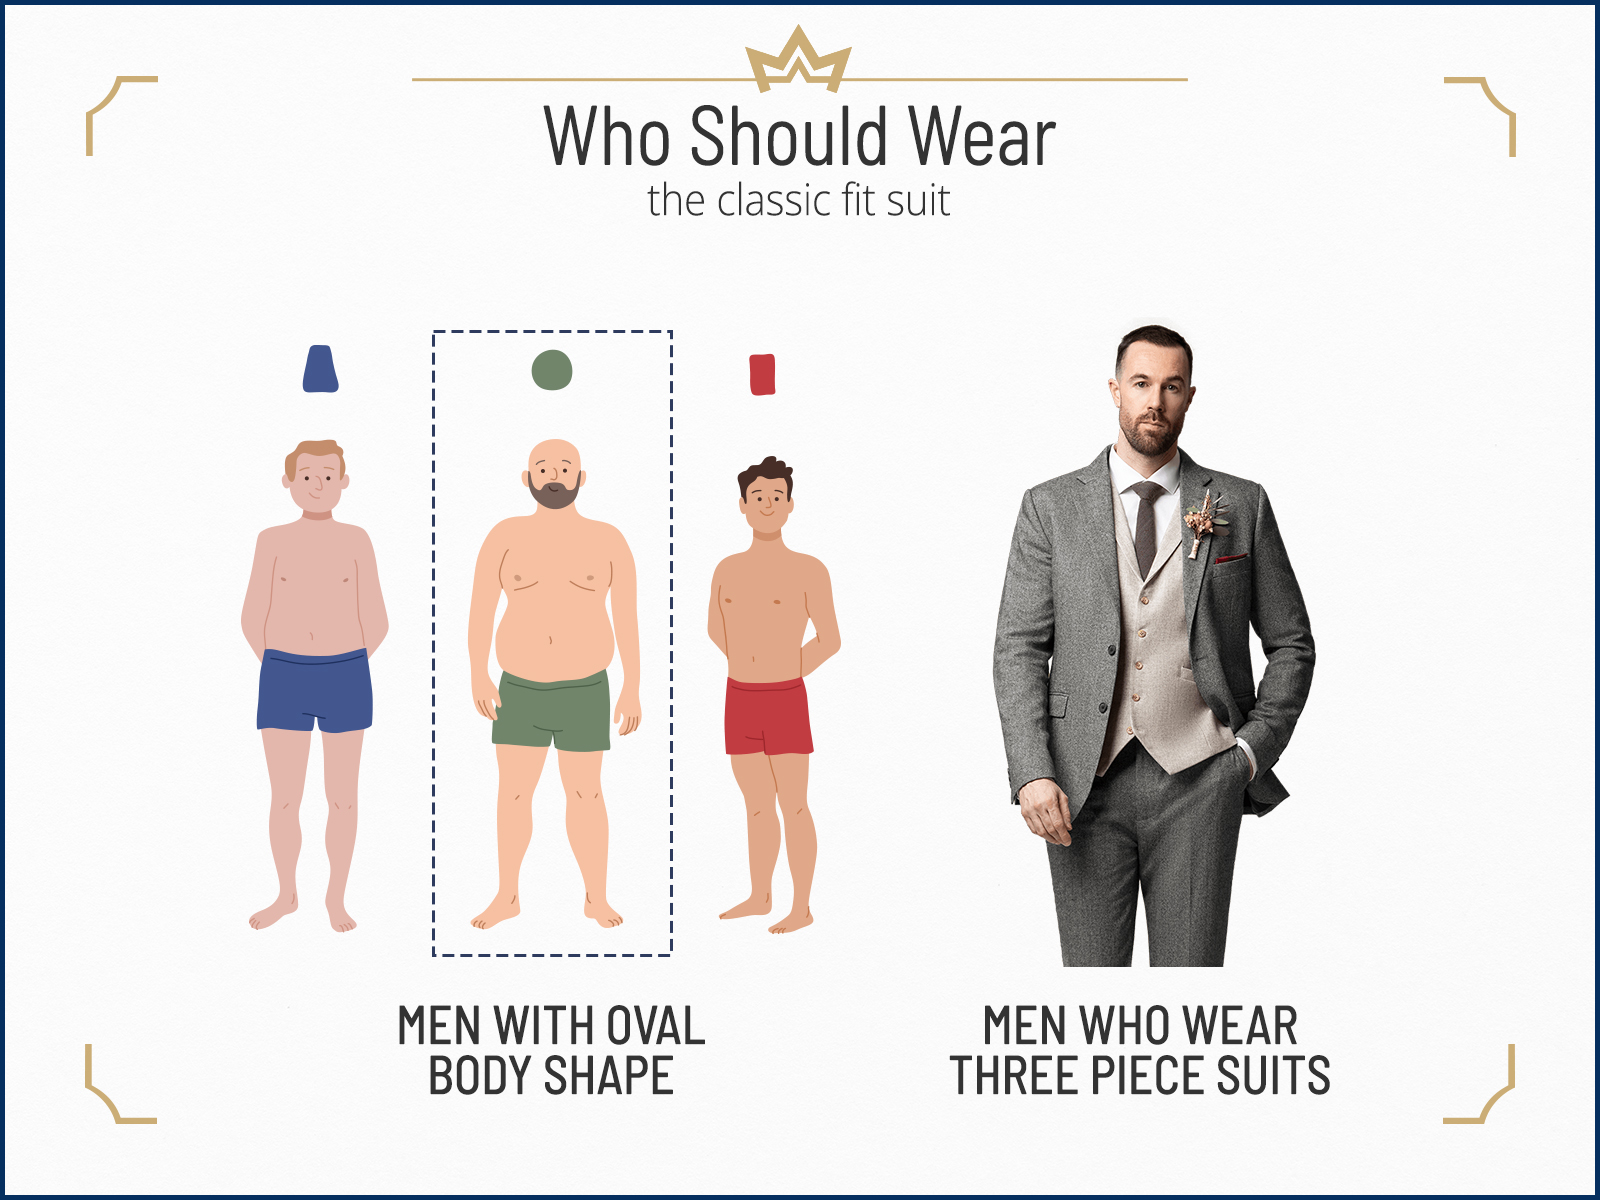 Who should wear a classic-fit suit